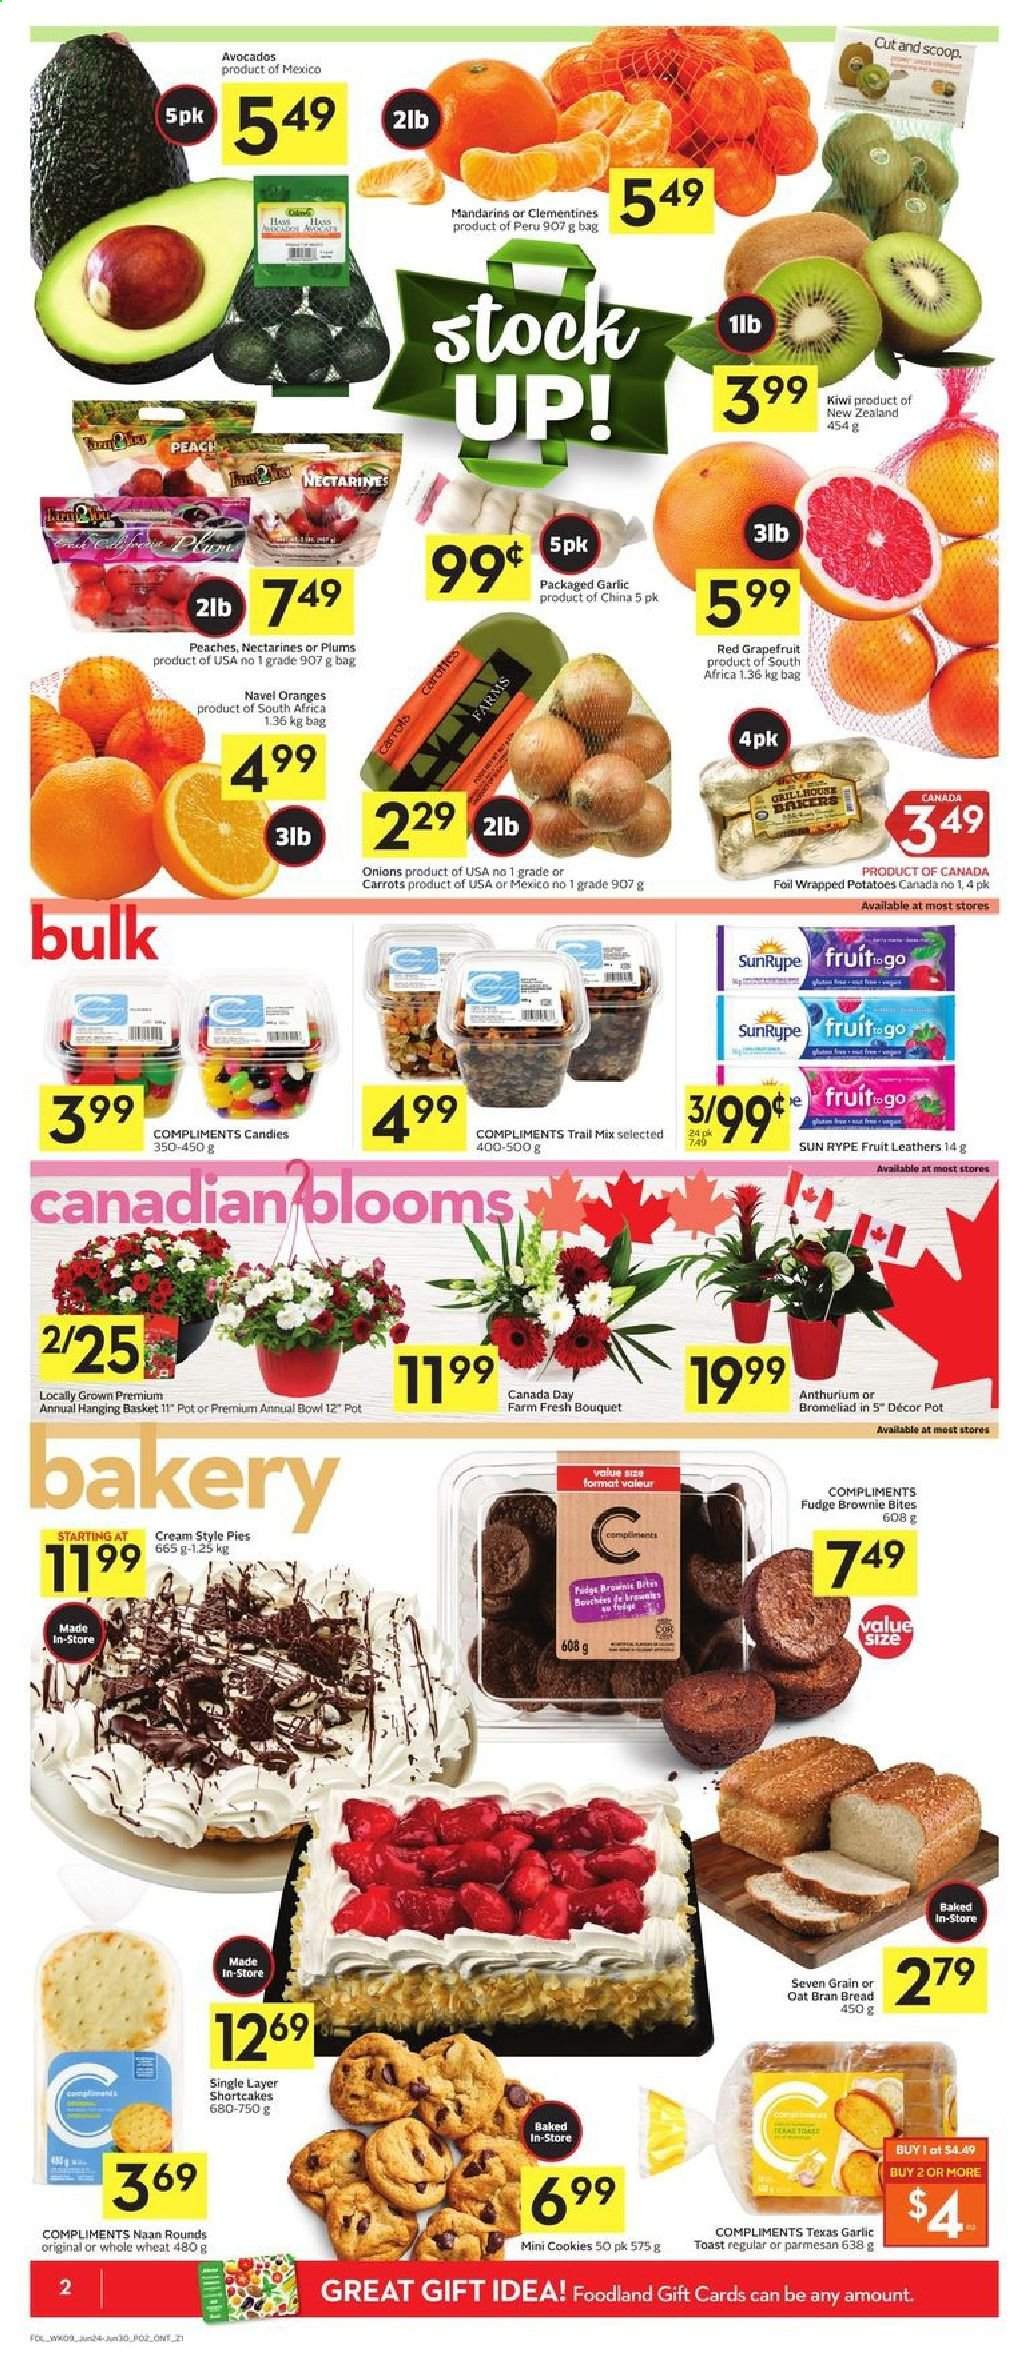 thumbnail - Circulaire Foodland - 24 Juin 2021 - 30 Juin 2021 - Produits soldés - nectarine, oranges, cookies, carotte, kiwi, clémentines, parmesan. Page 4.